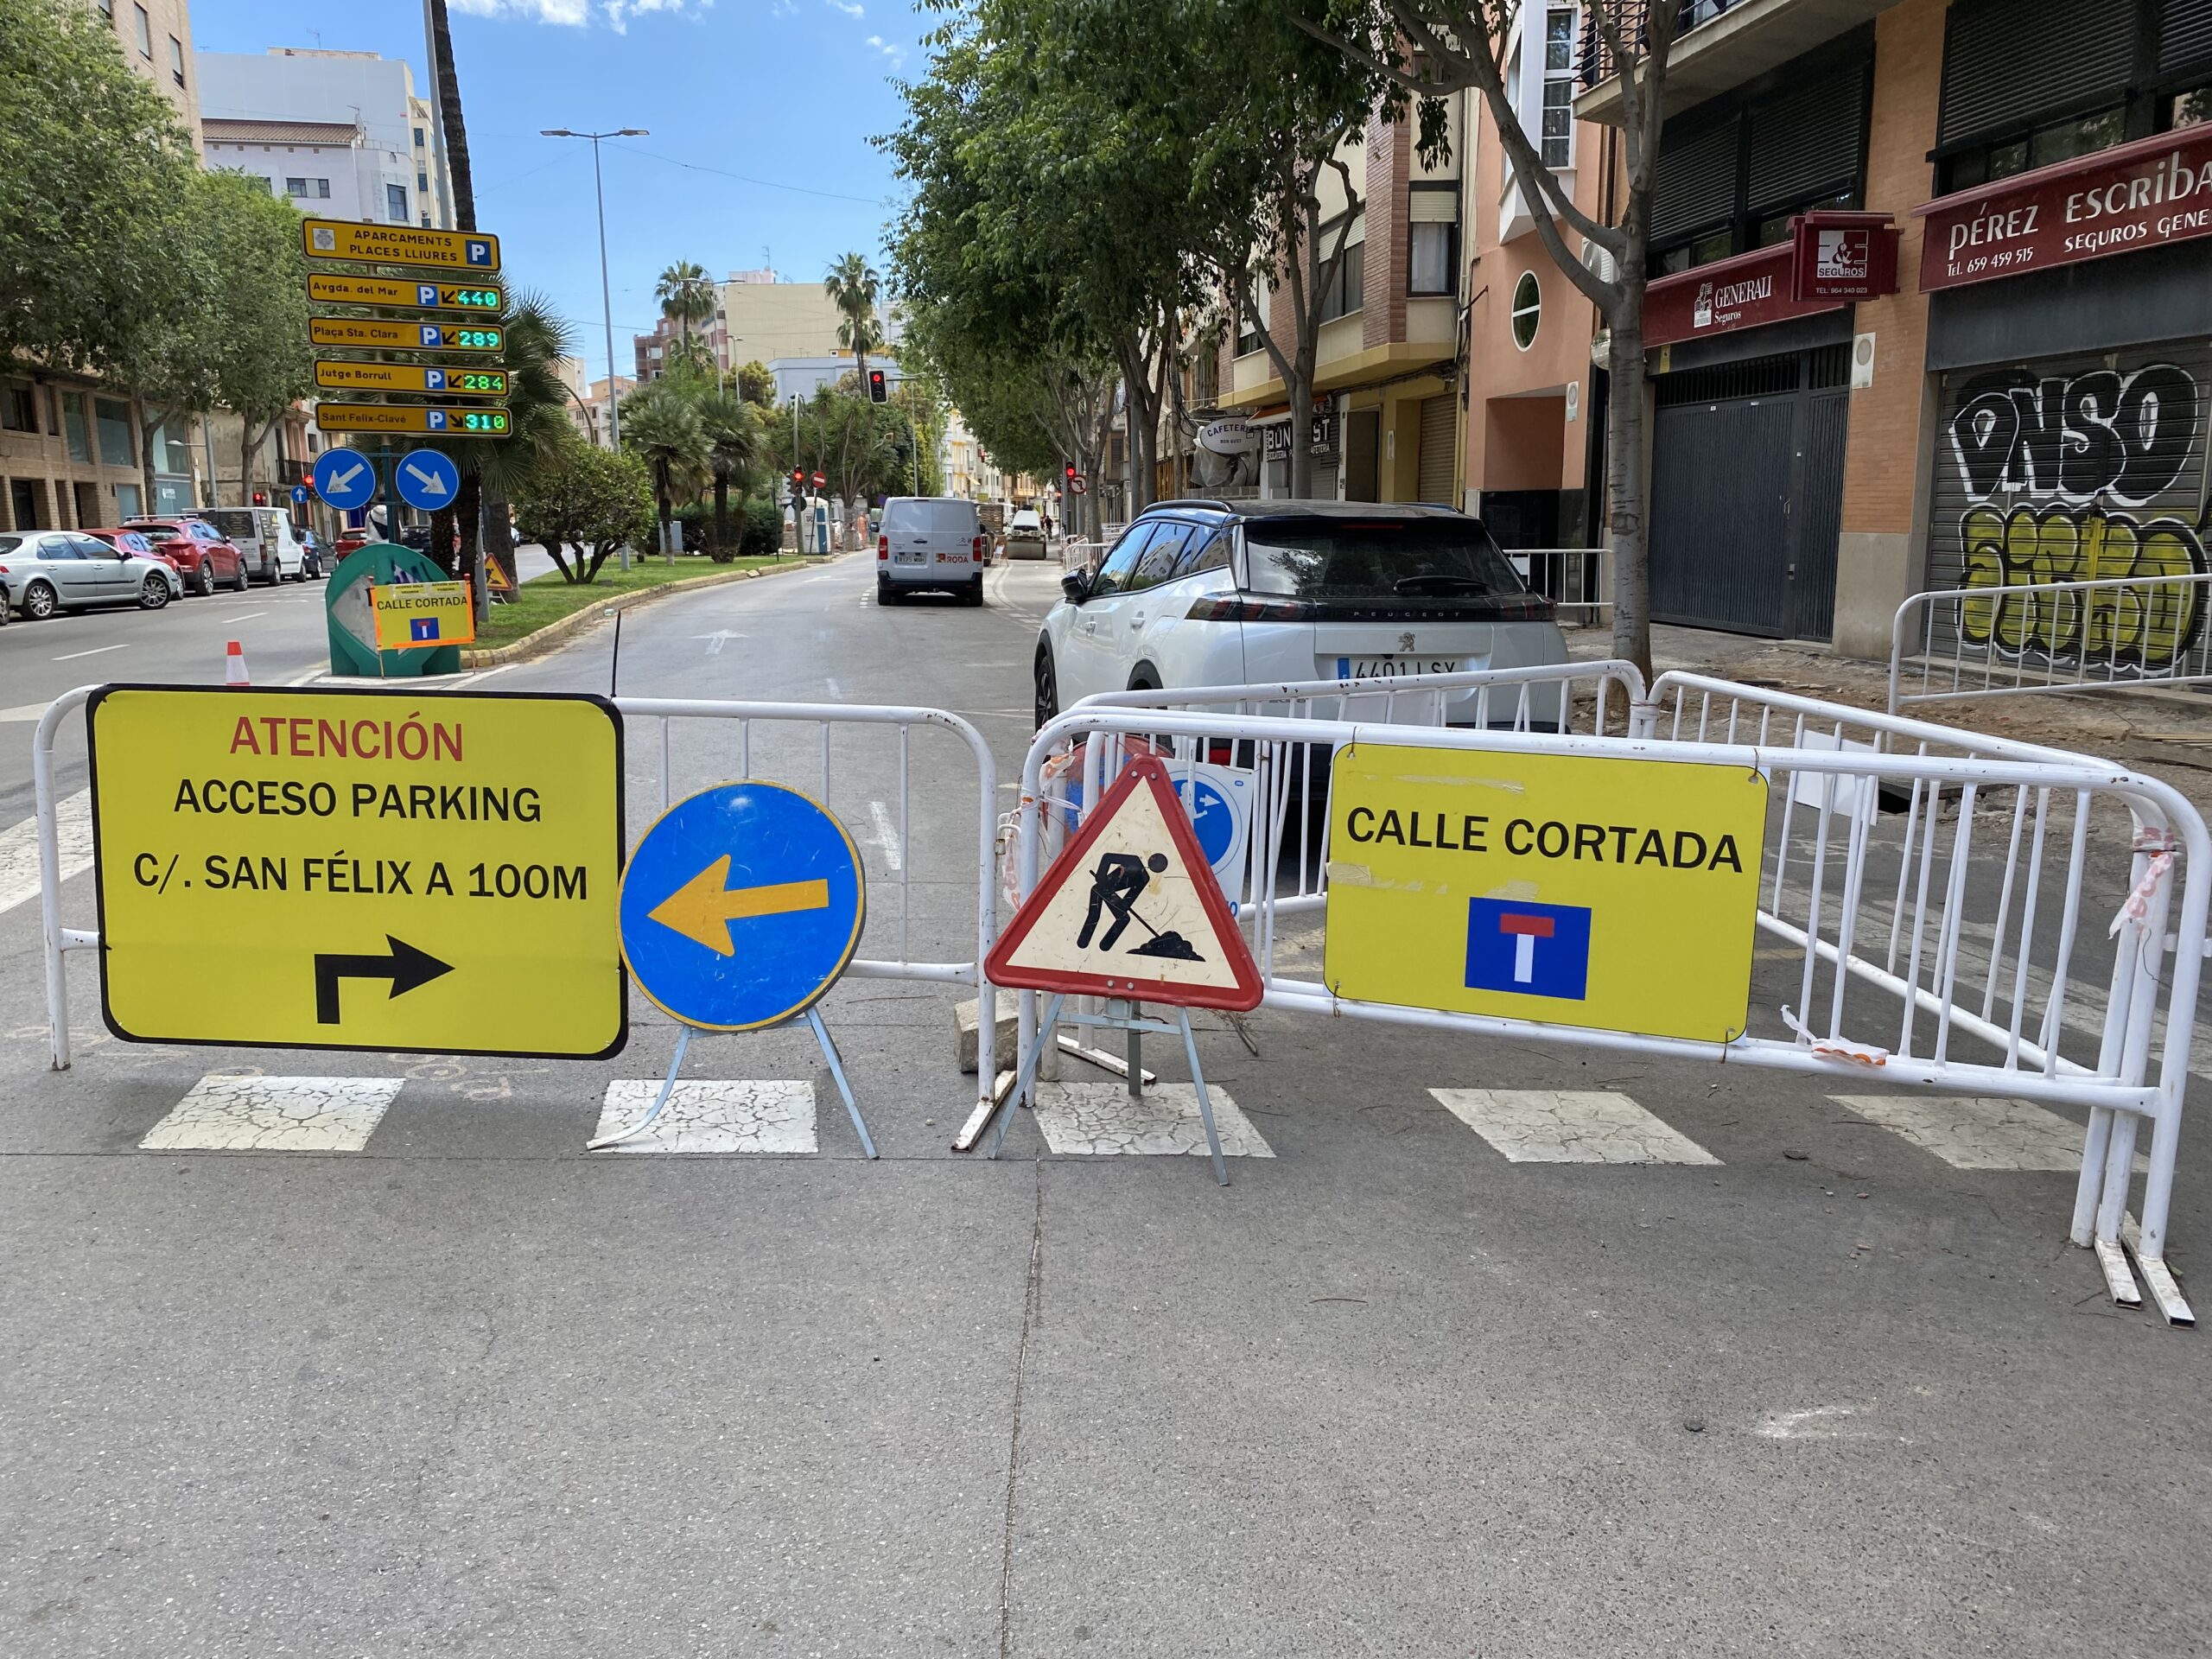 El Ayuntamiento de Castelló engaña a la ciudadanía al incumplir los plazos prometidos en las mejoras del Raval San Félix y sumir la ciudad en un caos de obras